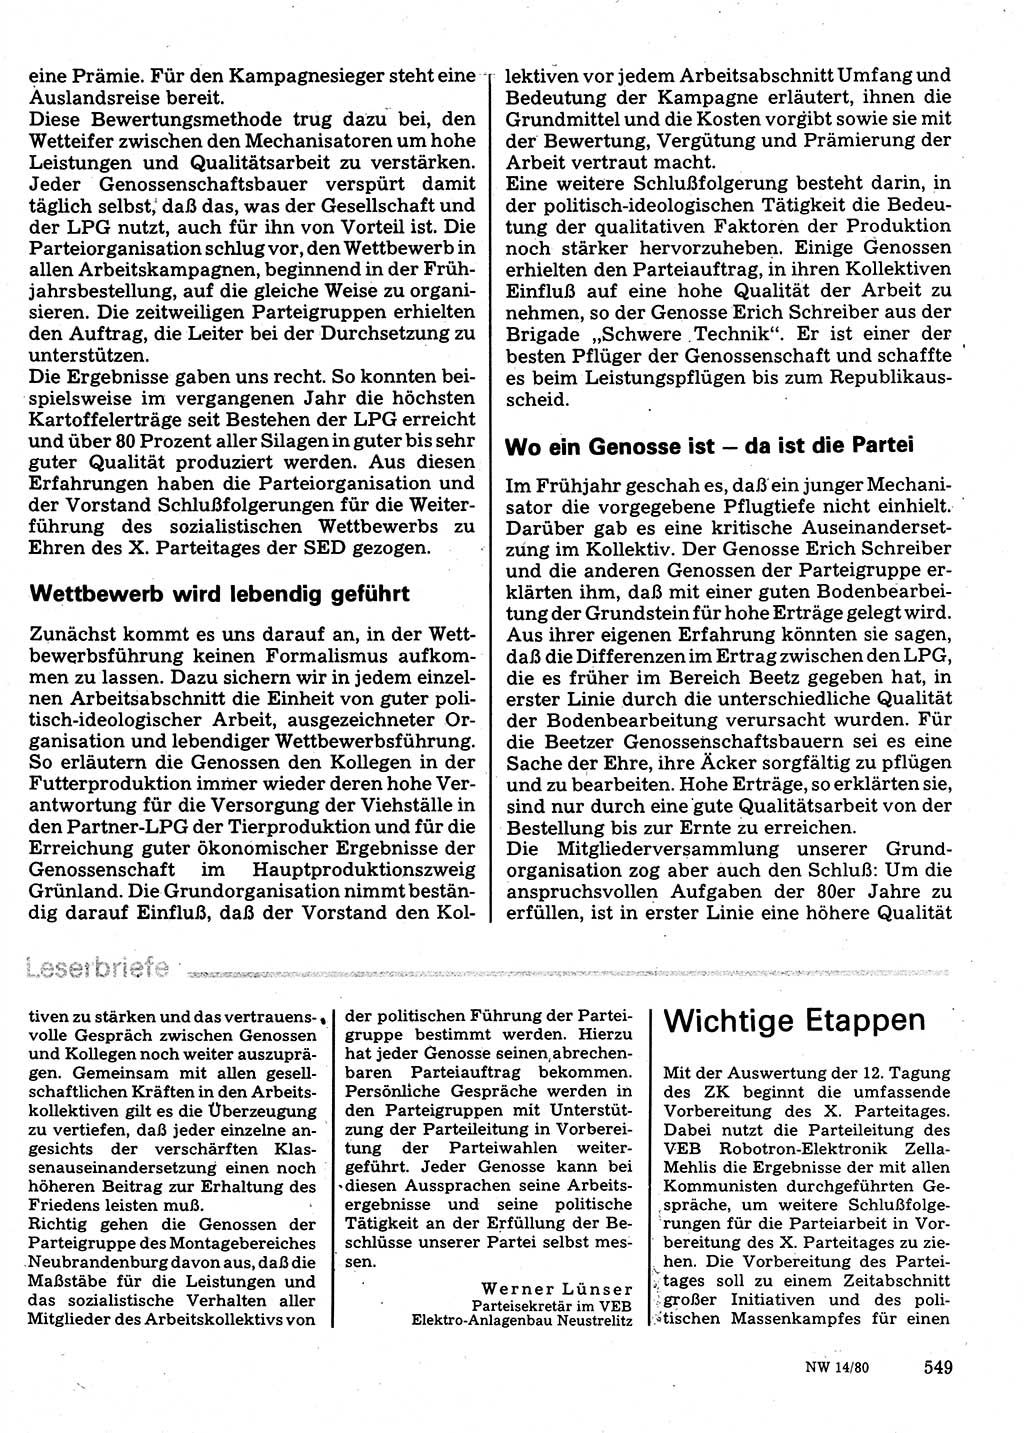 Neuer Weg (NW), Organ des Zentralkomitees (ZK) der SED (Sozialistische Einheitspartei Deutschlands) für Fragen des Parteilebens, 35. Jahrgang [Deutsche Demokratische Republik (DDR)] 1980, Seite 549 (NW ZK SED DDR 1980, S. 549)